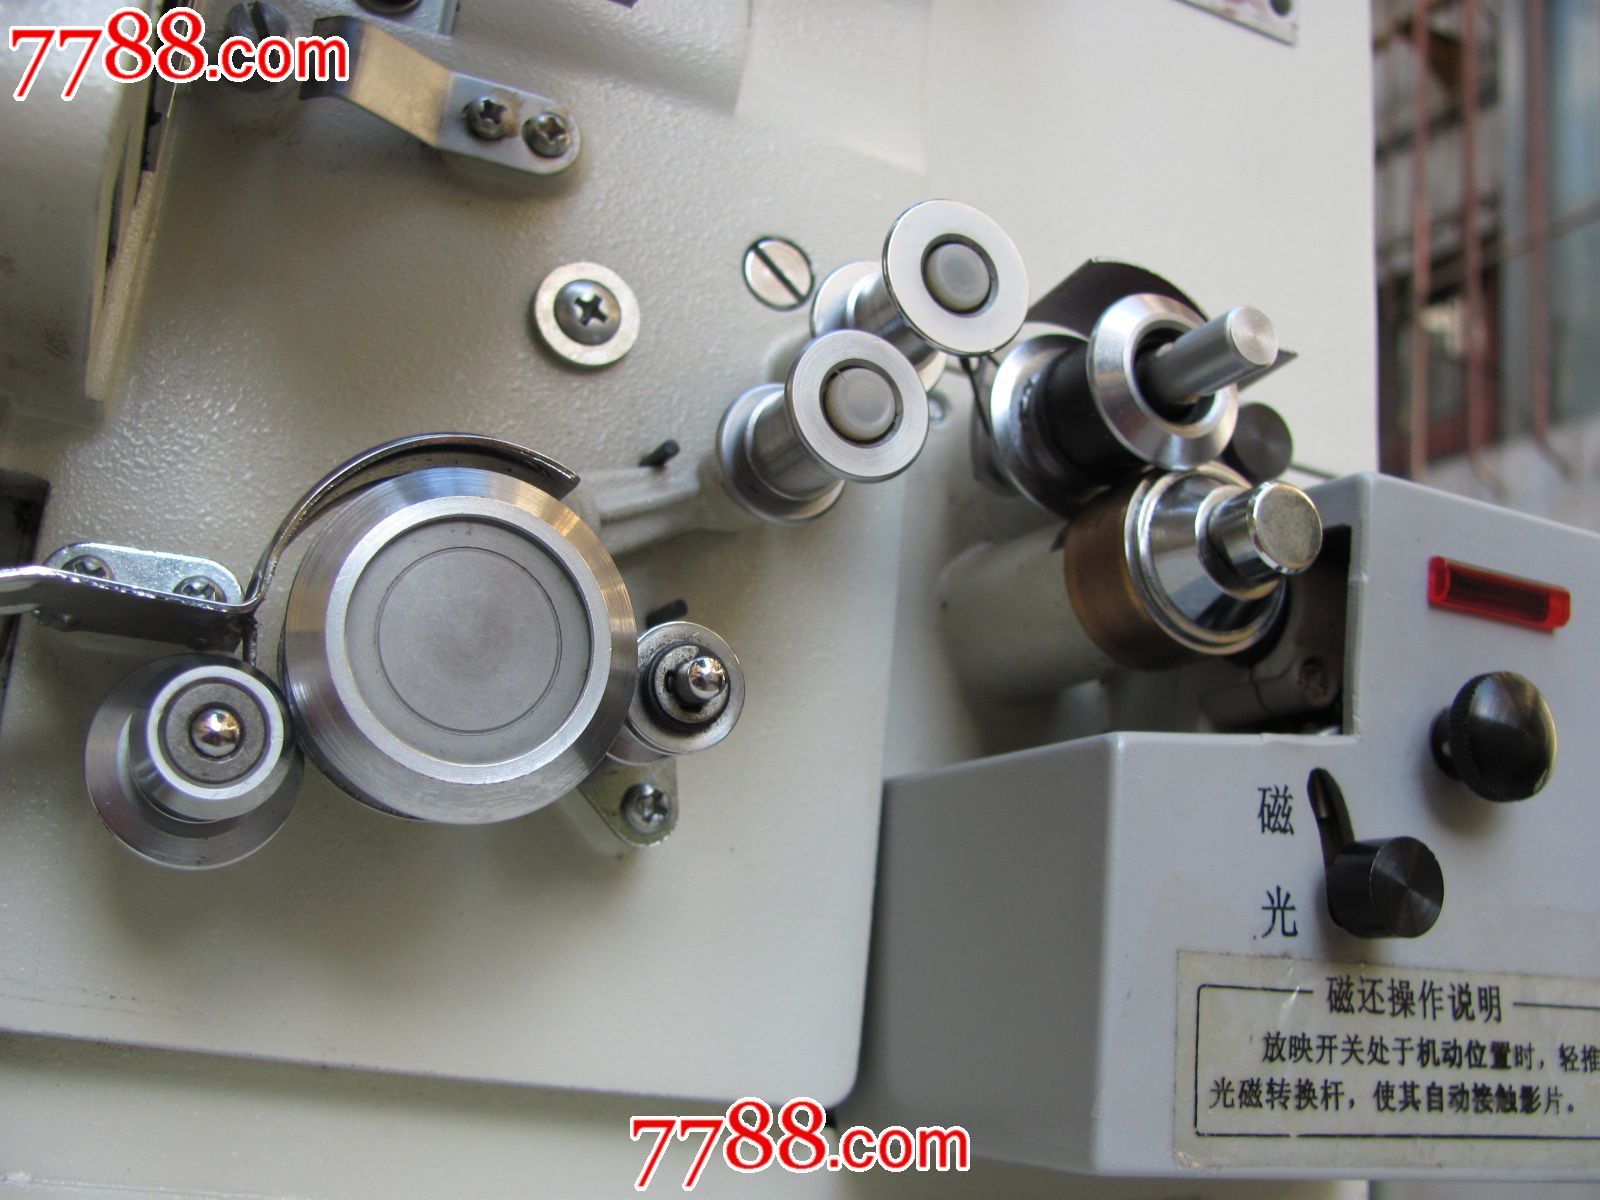 2003年8月出厂的长江f16-4aiiys双机电影放映机-图(3)机头2